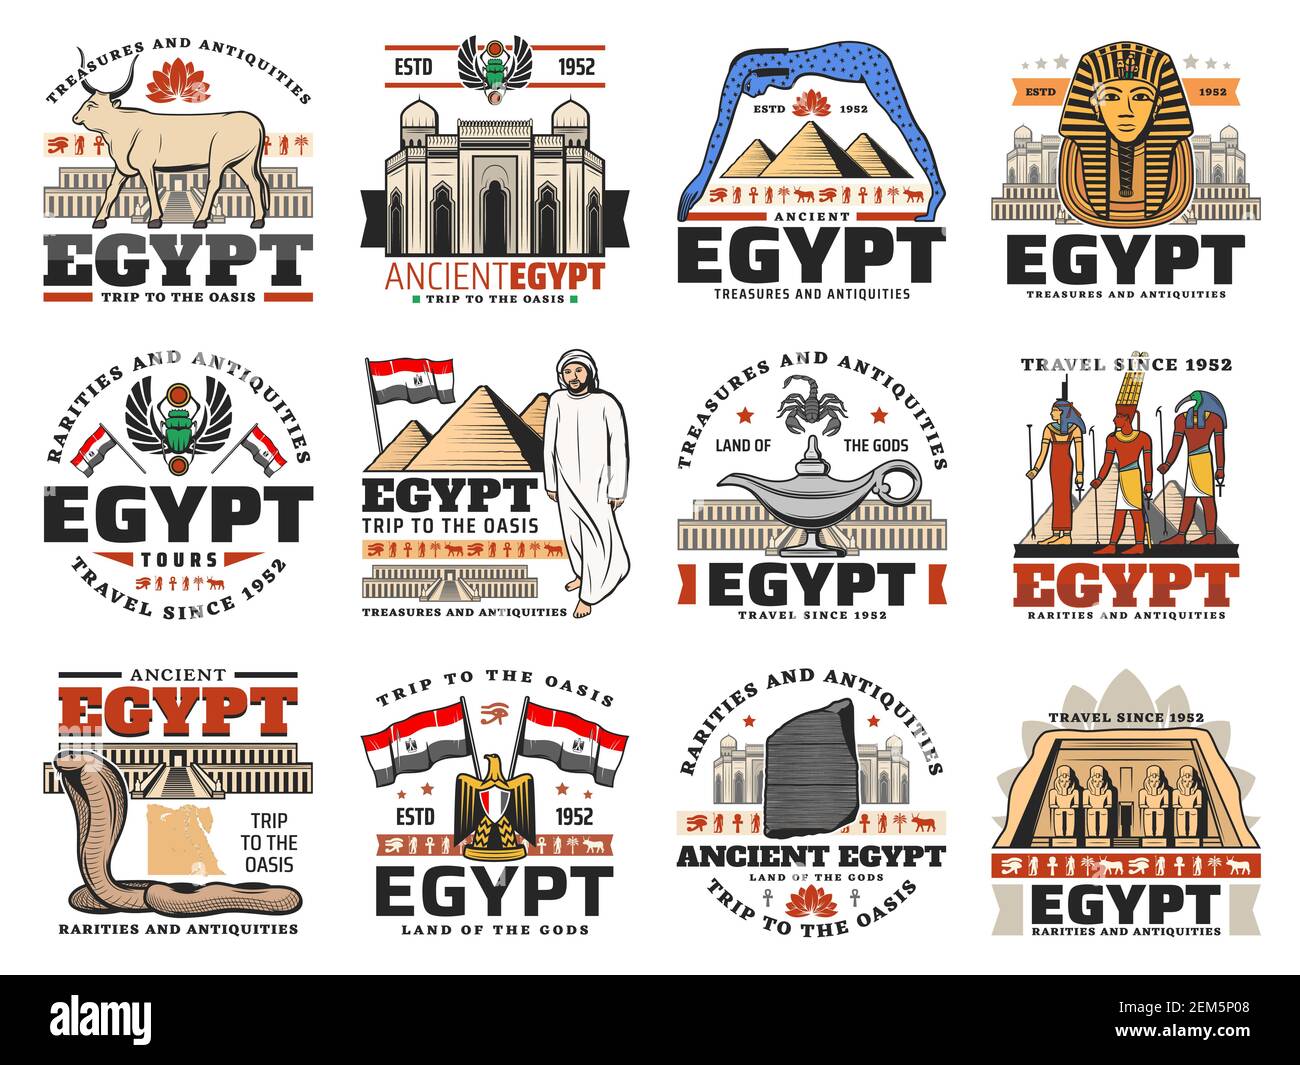 Alte Ägypten Ikonen der ägyptischen Reise Vektor-Design. Pharao Pyramiden, Sphinx und Gizeh Tempel, Amun, Isis und Thoth Götter mit Auge des Horus und Ankh, Stock Vektor